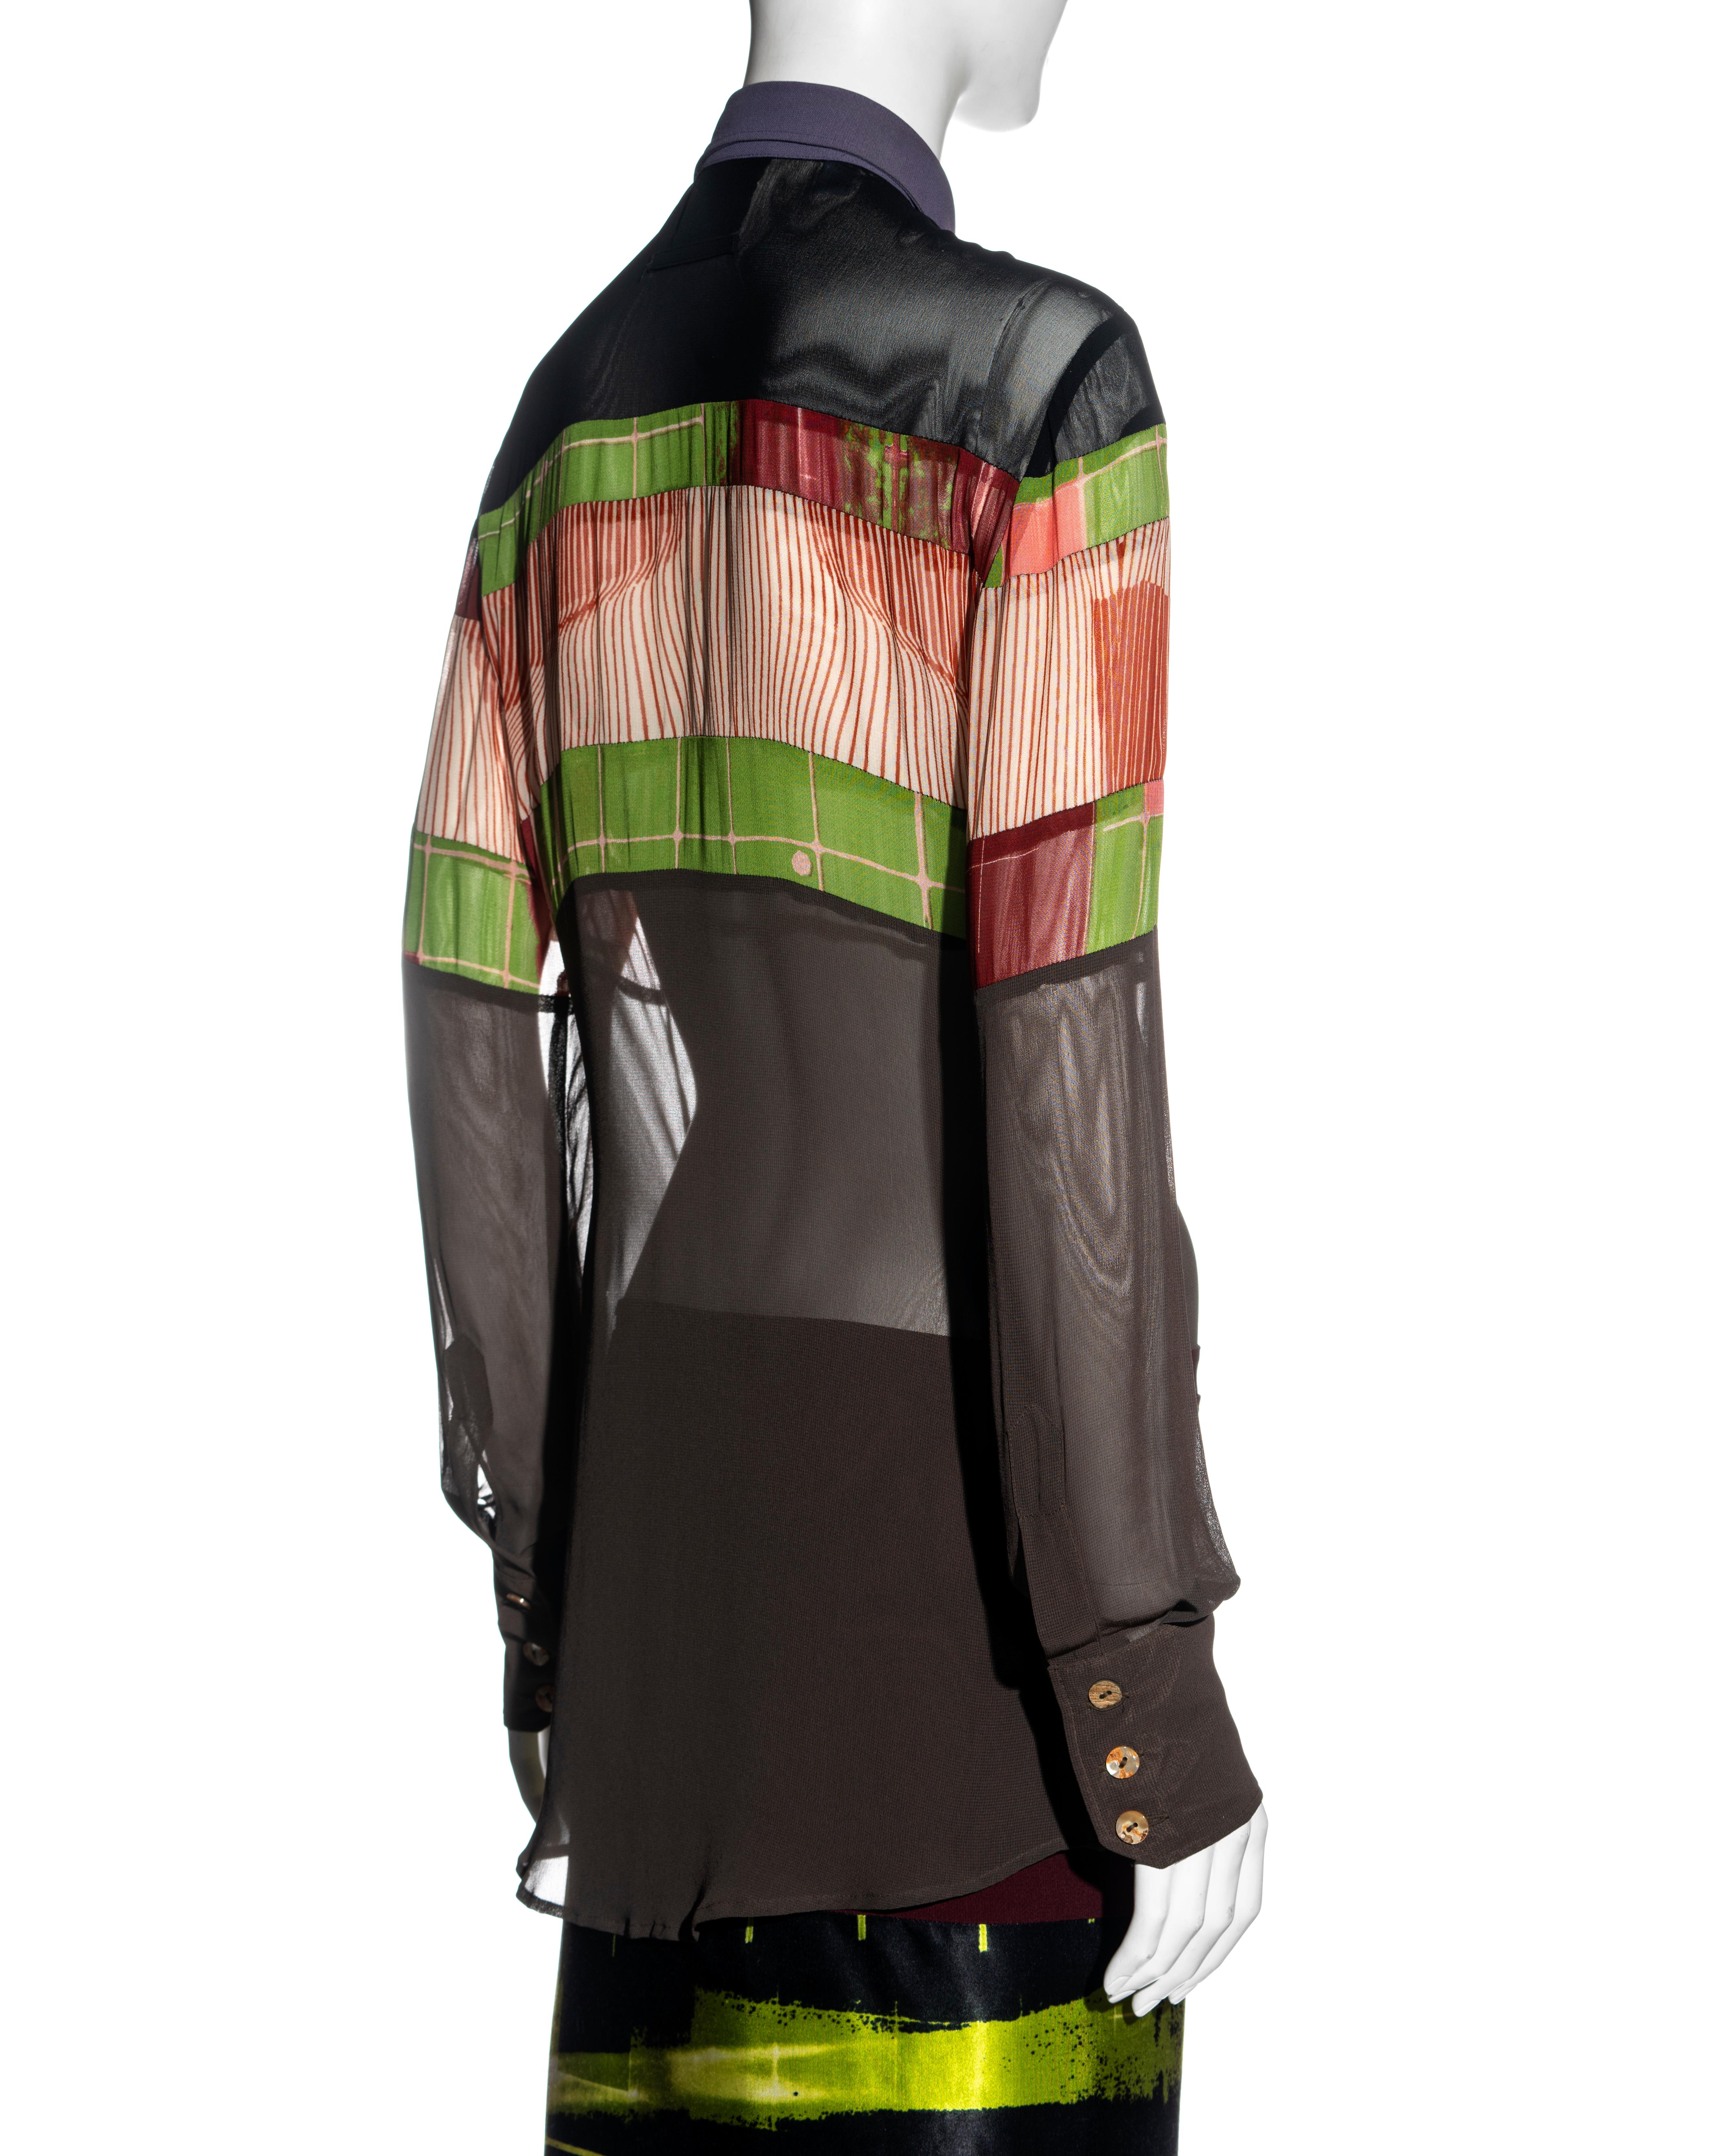 Jean Paul Gaulter 'Cyberhippie' shirt dress with wrap skirt, ss 1996 4